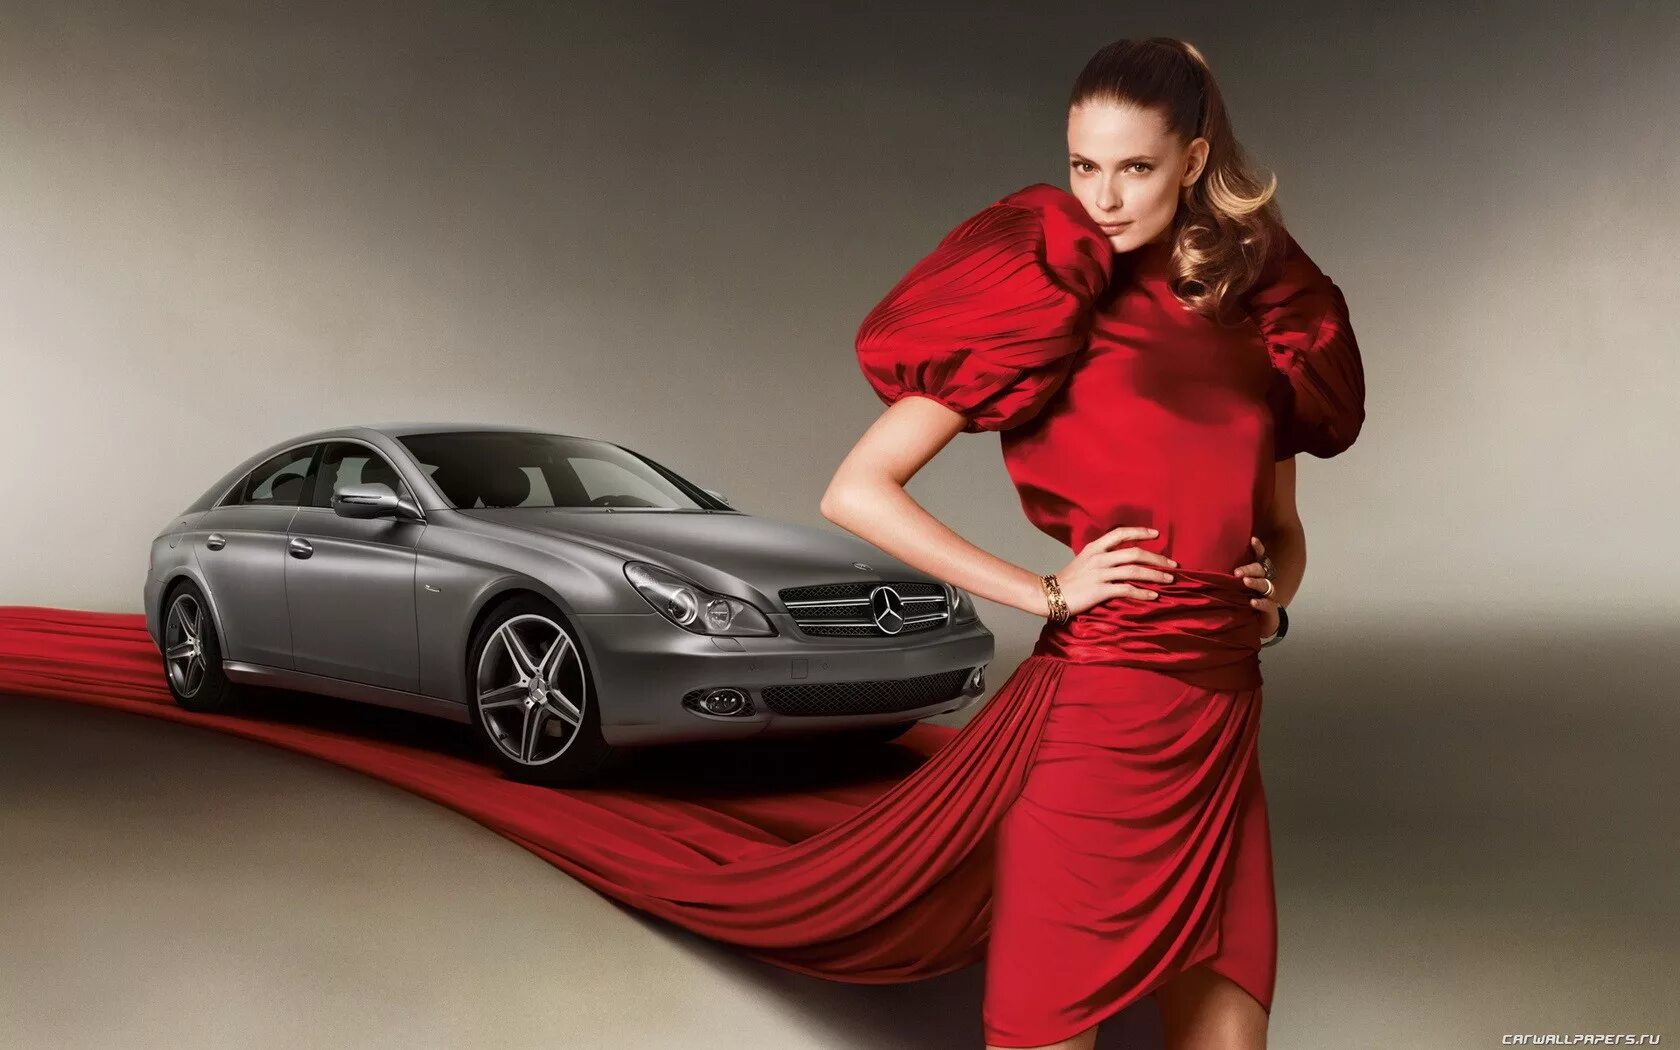 Красивые фото для рекламы. Женщина в автомобиле. Машины для женщин. Шикарная женщина с машиной. Девушка на Красном мерседесе.